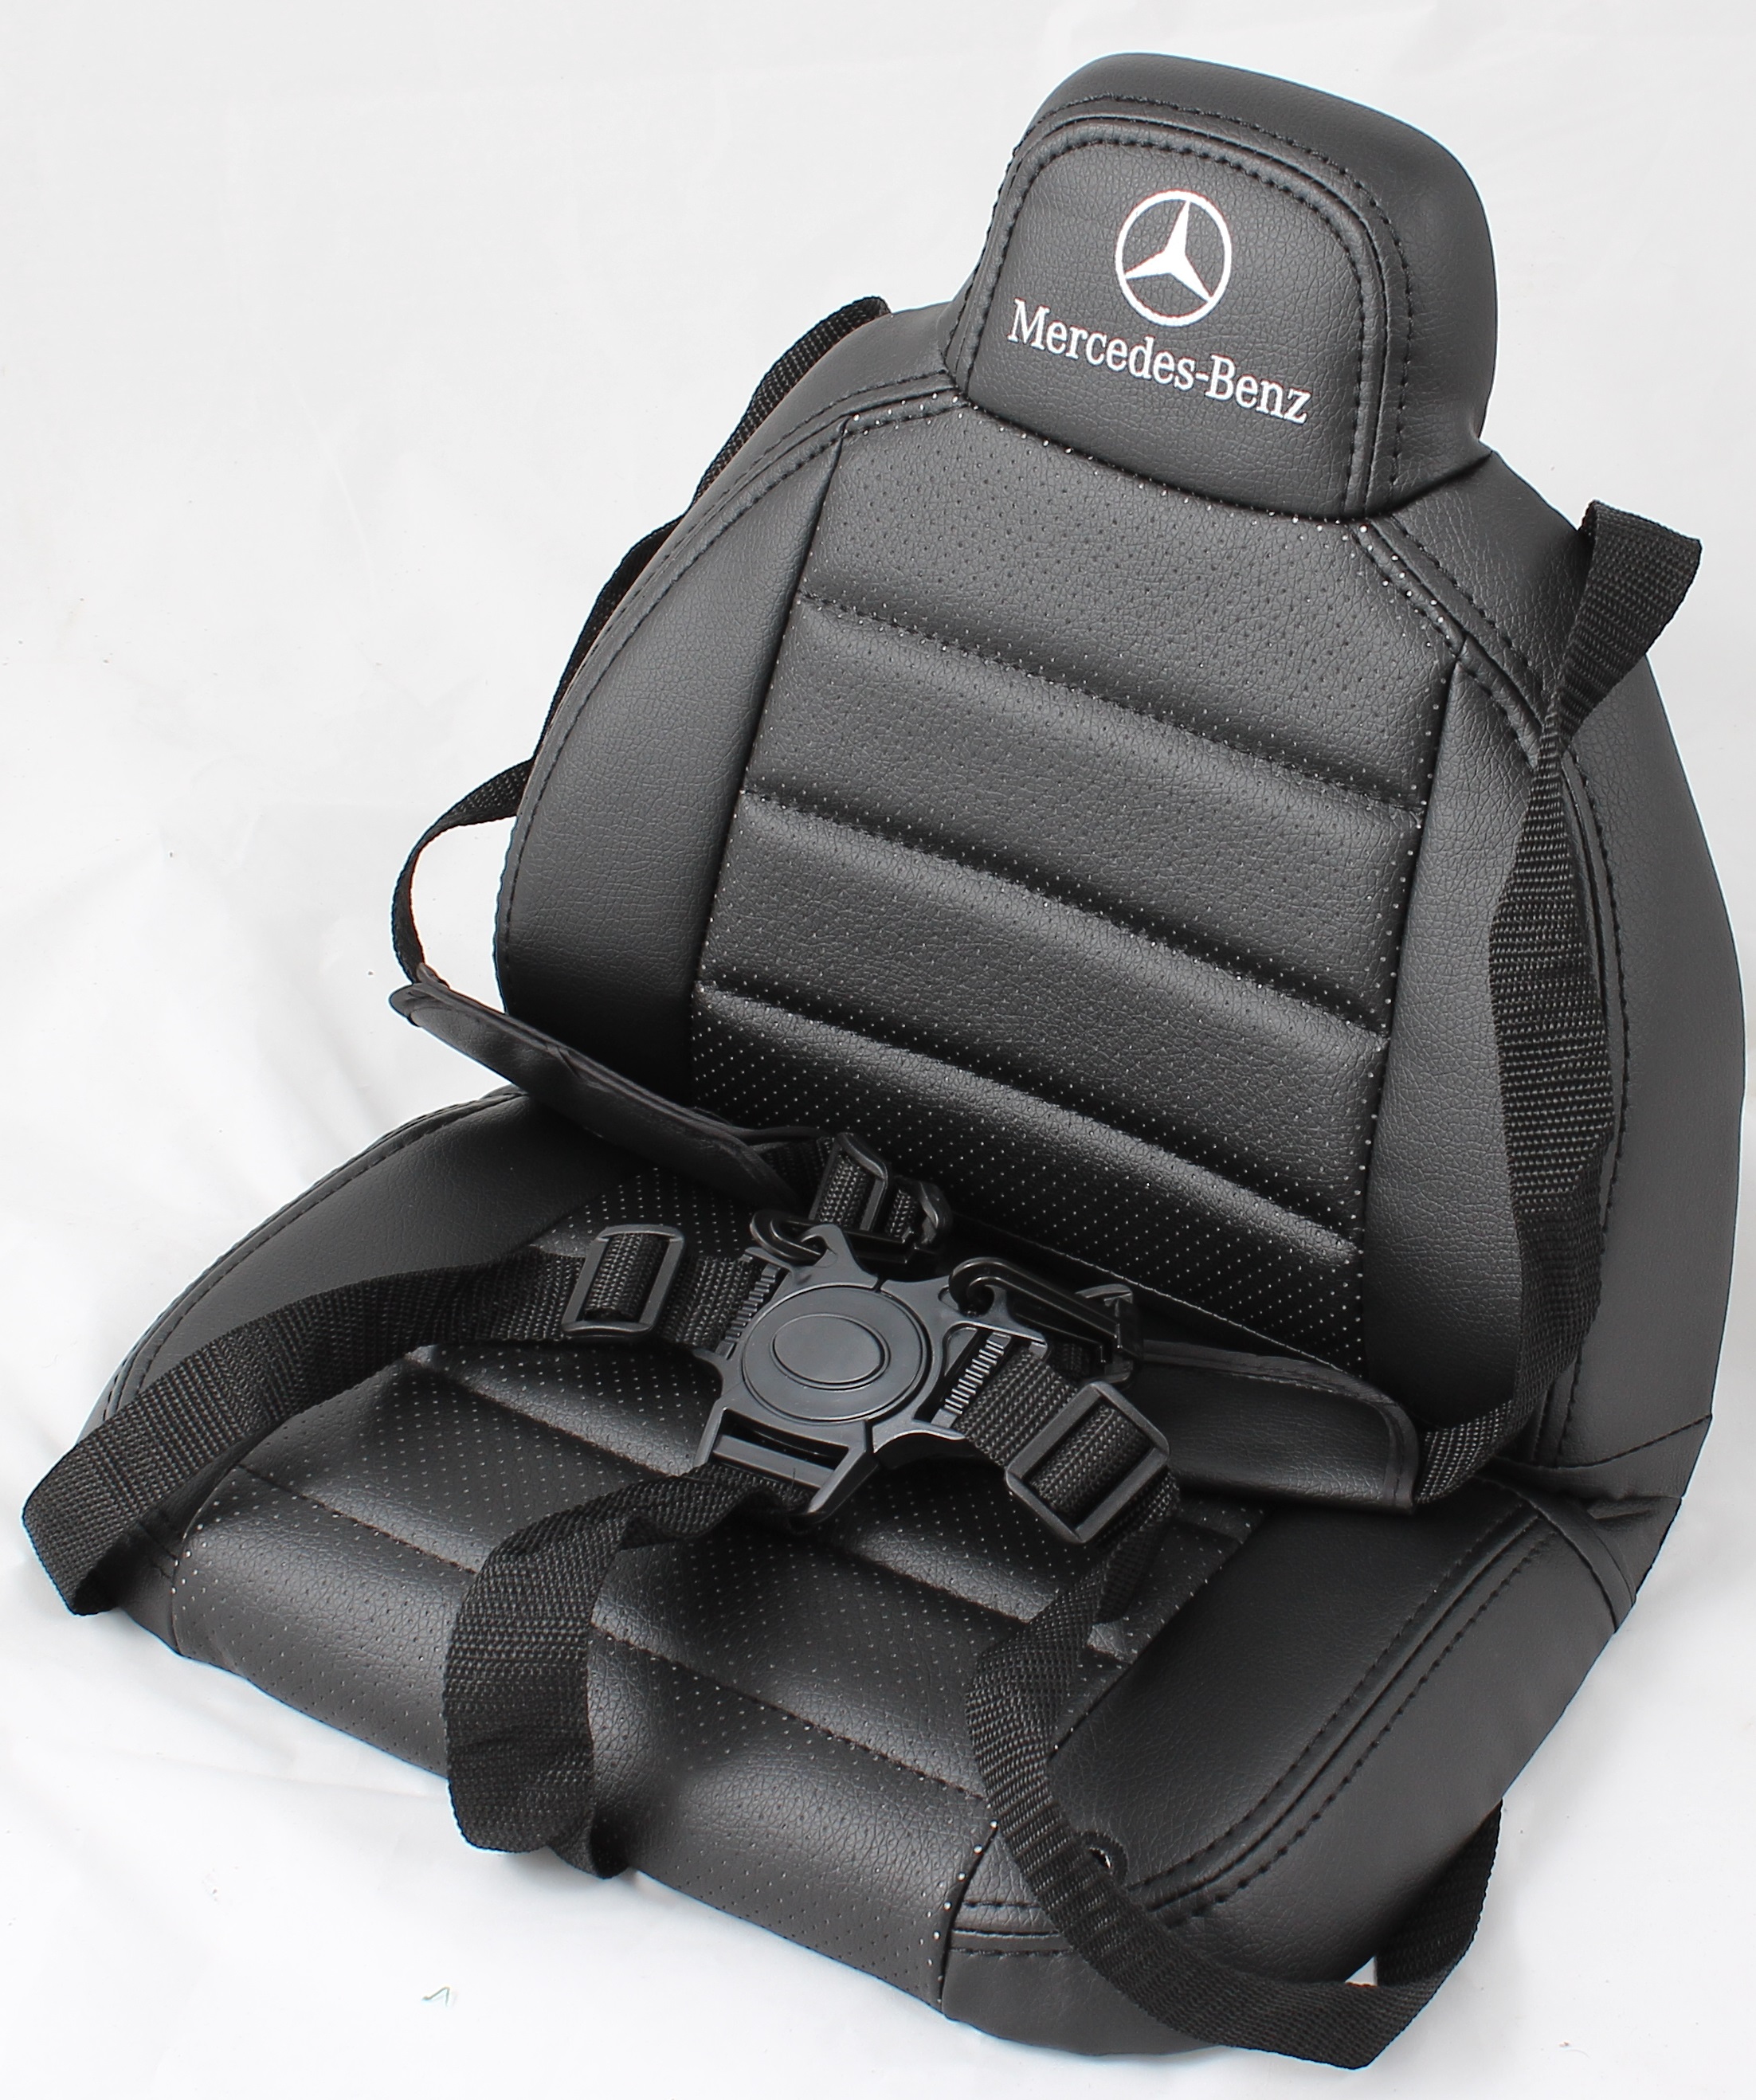 Knurre Conform portugisisk Læder sæde til Mercedes G63 AMG til Børn 12V Kr. 199 - på lager til  omgående levering